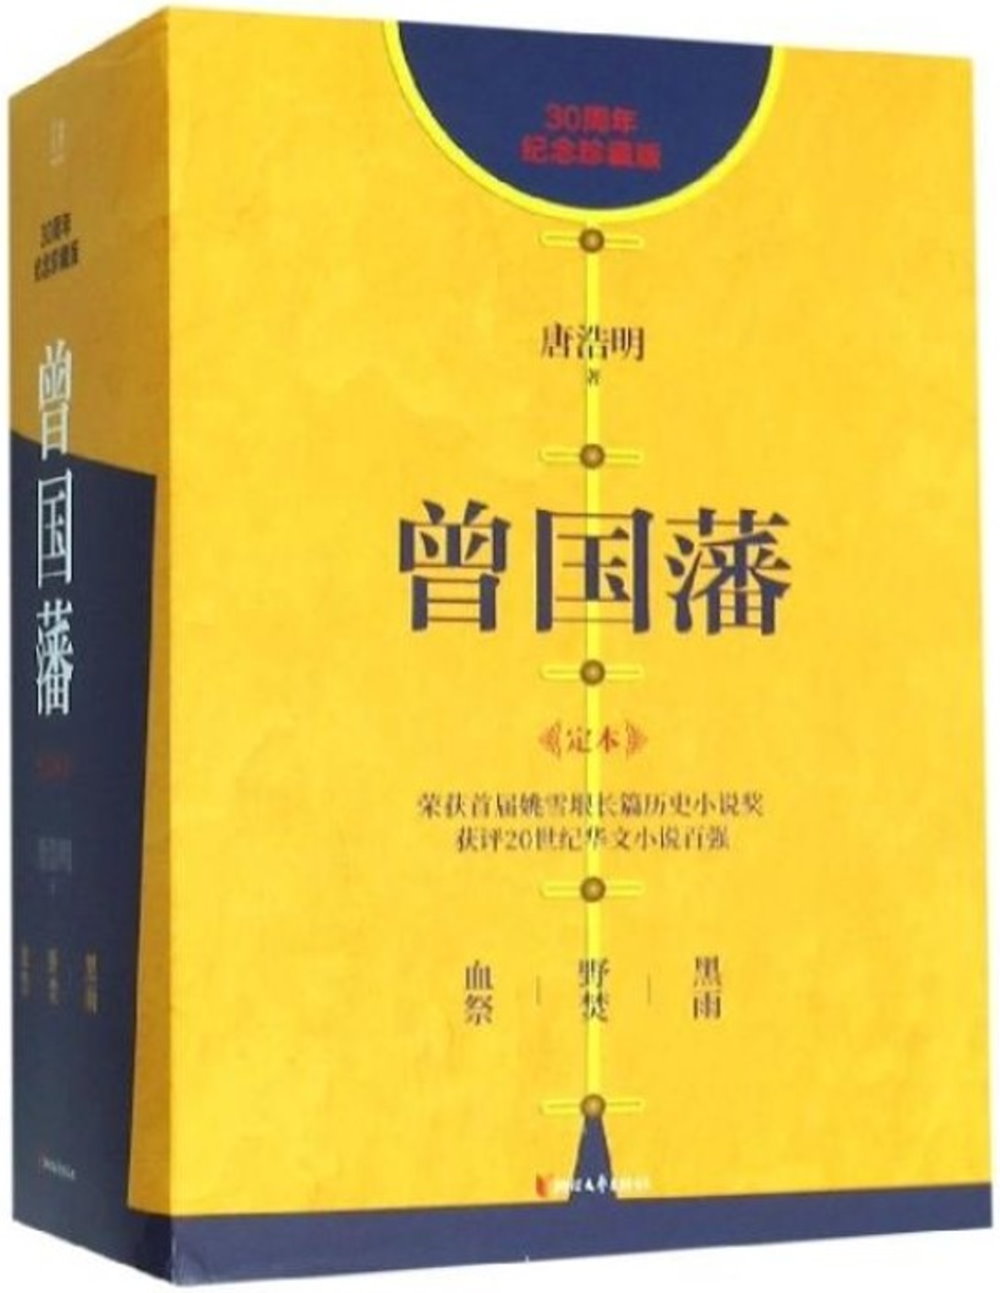 曾國藩（30周年紀念珍藏版 共3冊）